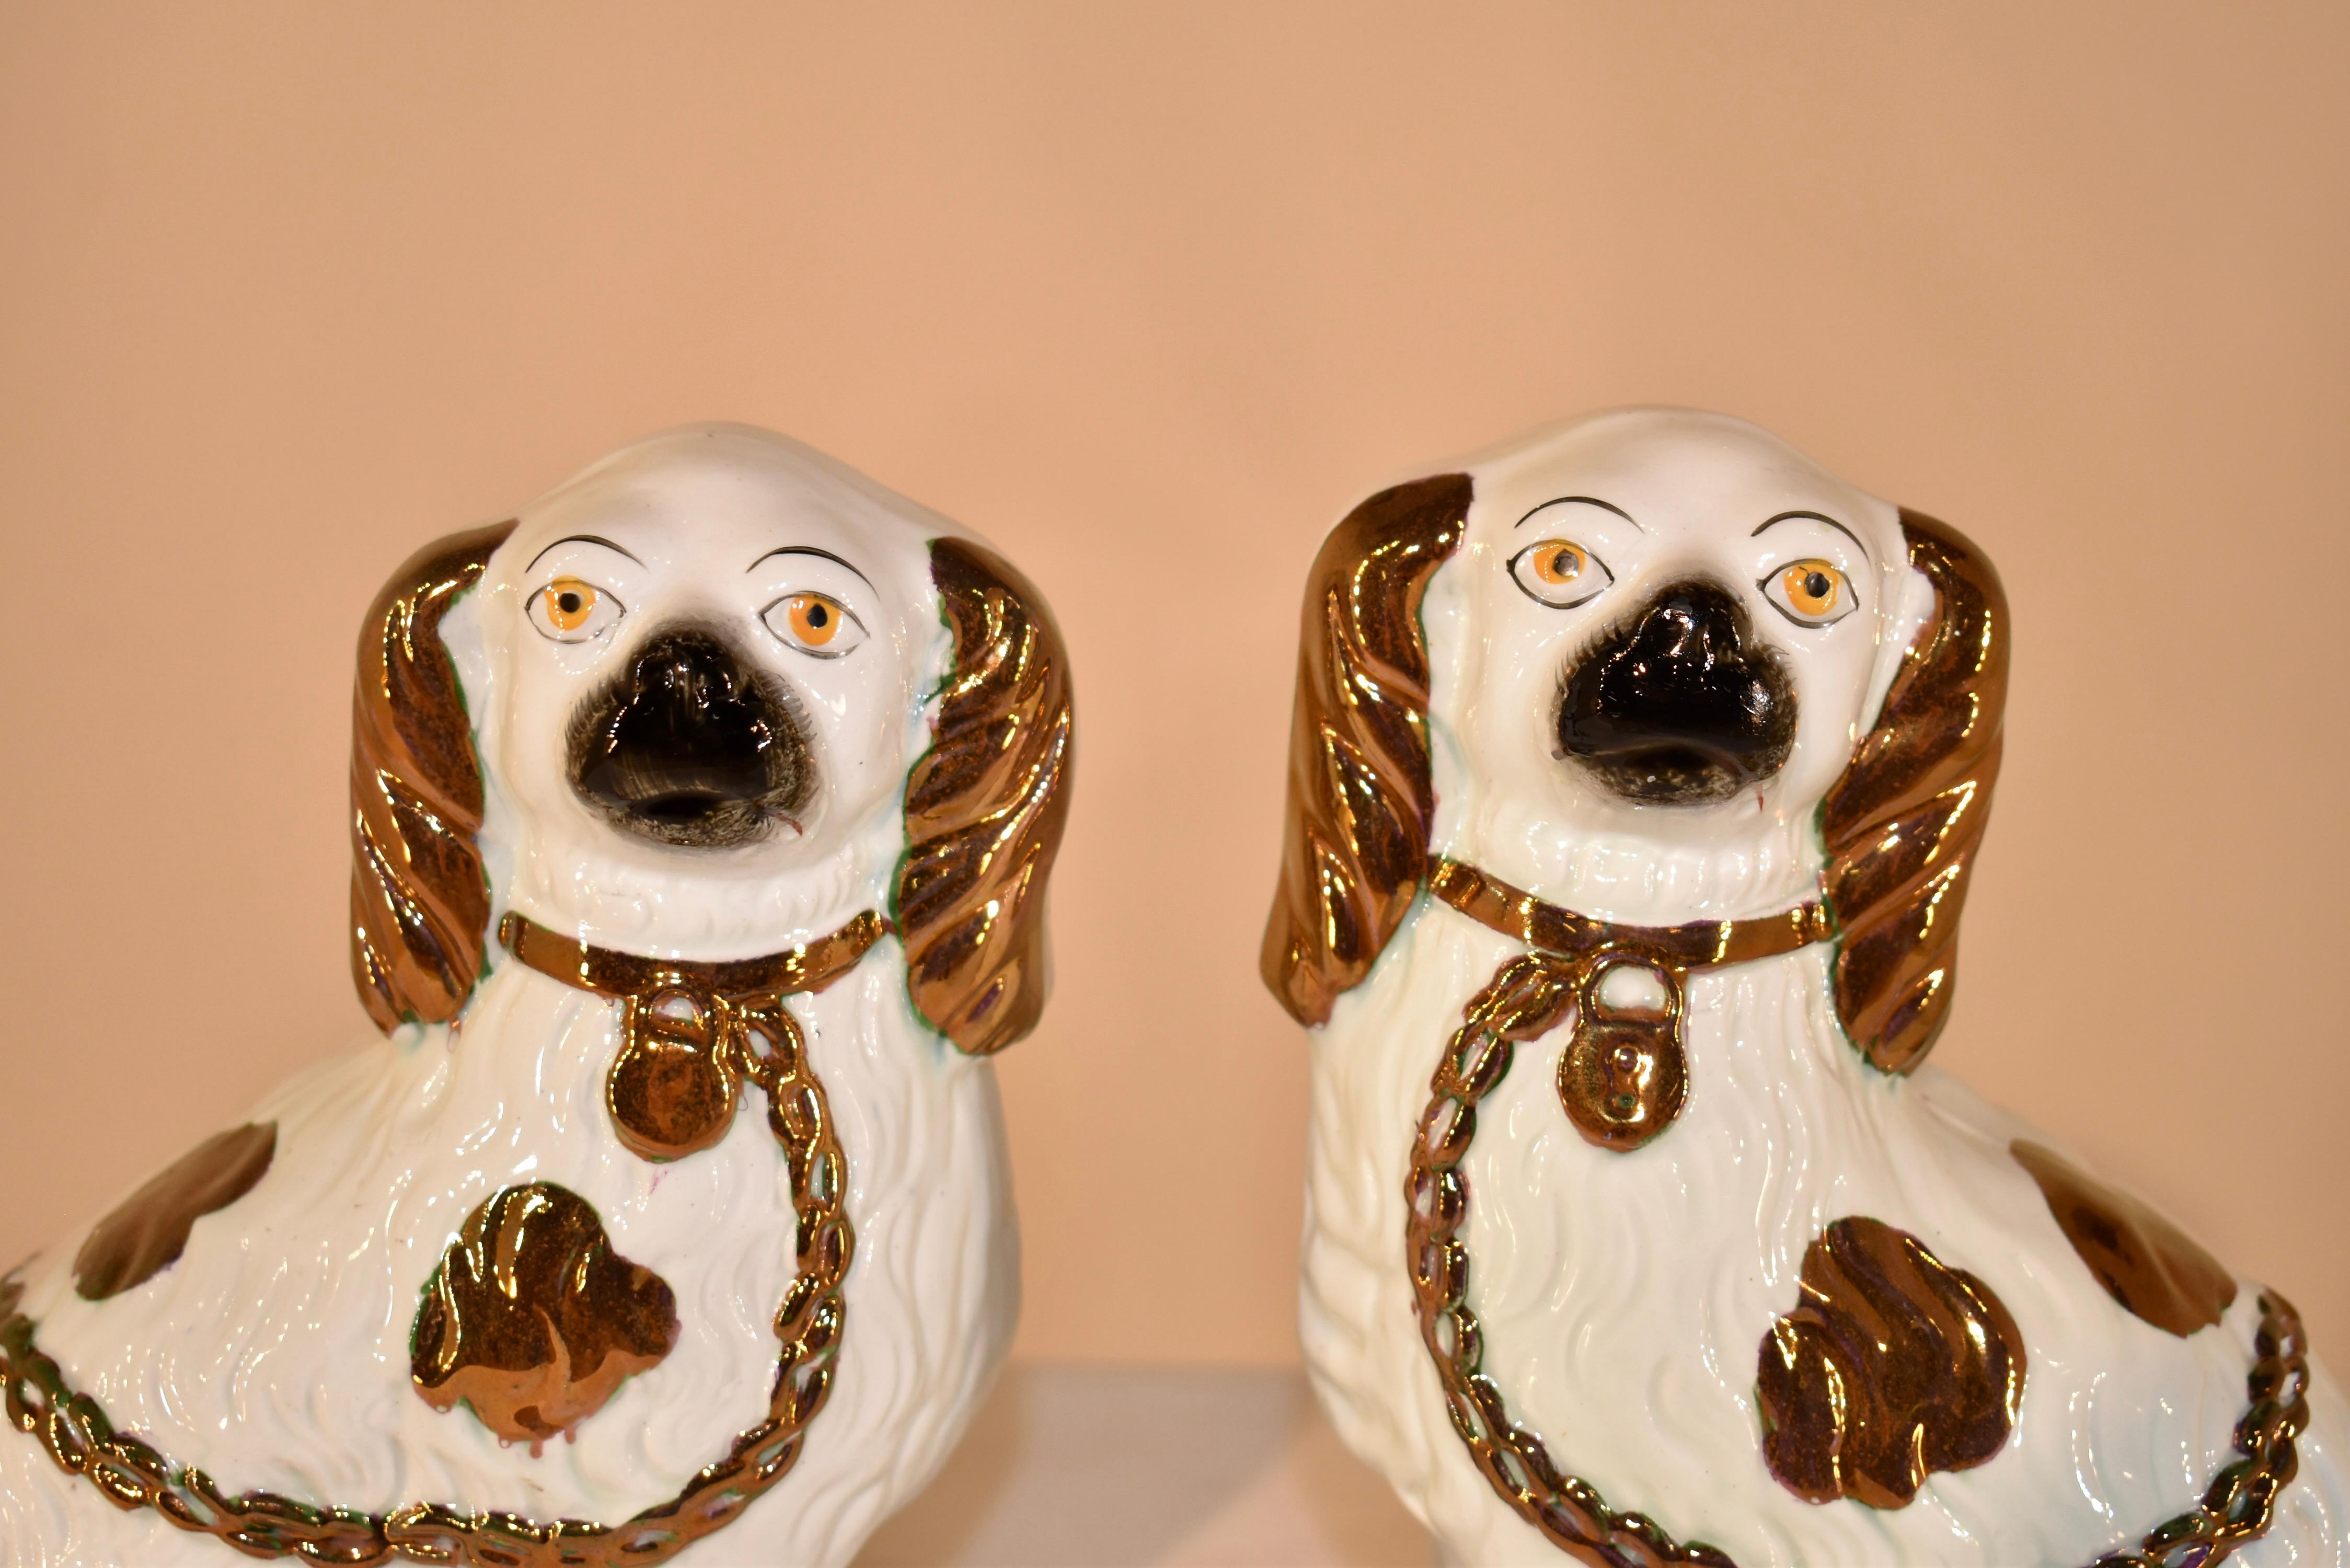 Paire de figurines d'épagneuls du Staffordshire du XIXe siècle, avec pieds avant séparés.  Cette paire de chiens présente de magnifiques décorations en lustre de cuivre peintes à la main.  Les chiens à pattes séparées sont plus rares et beaucoup